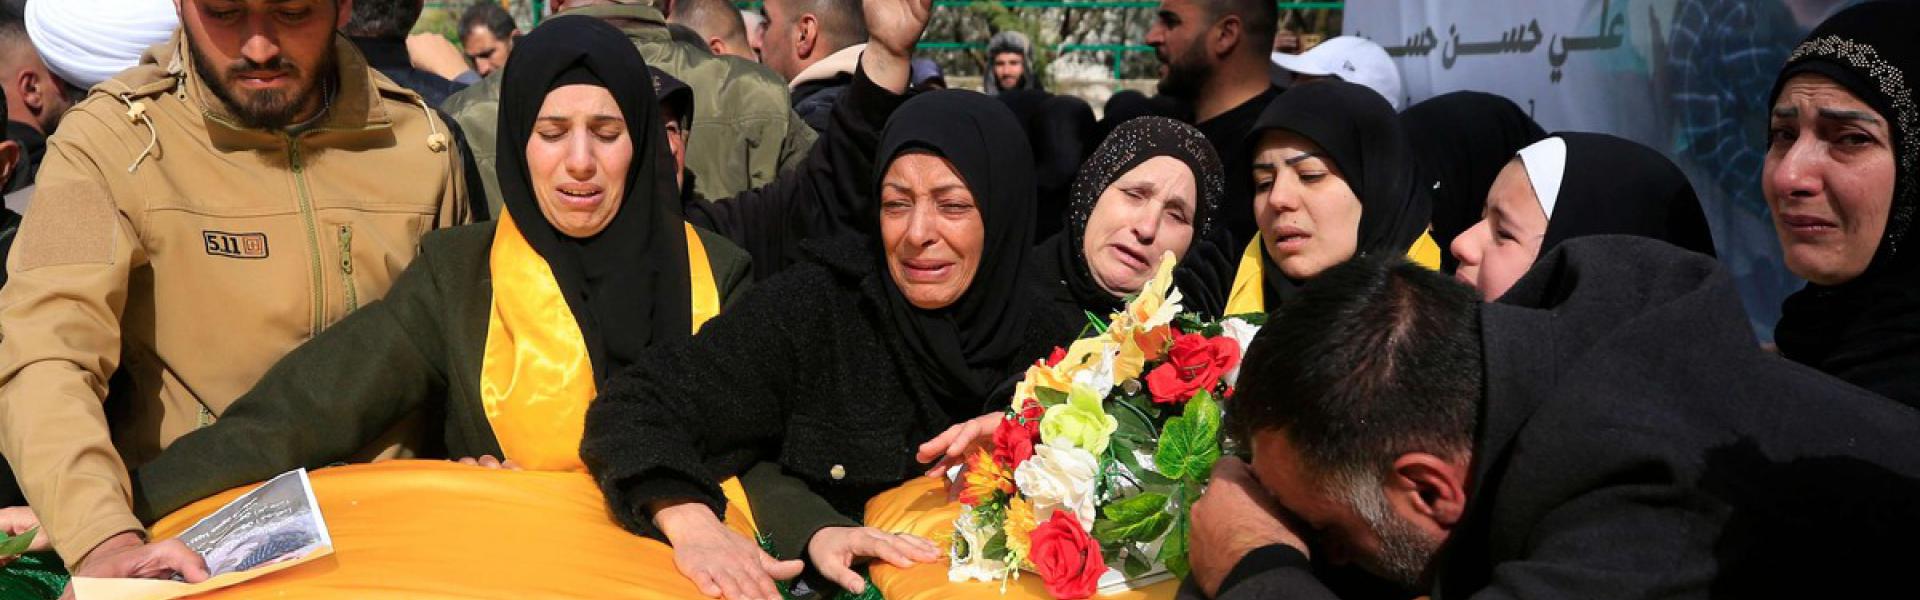 ارتفاع حصيلة قتلى حزب الله يثير صدمة في صفوف أنصاره